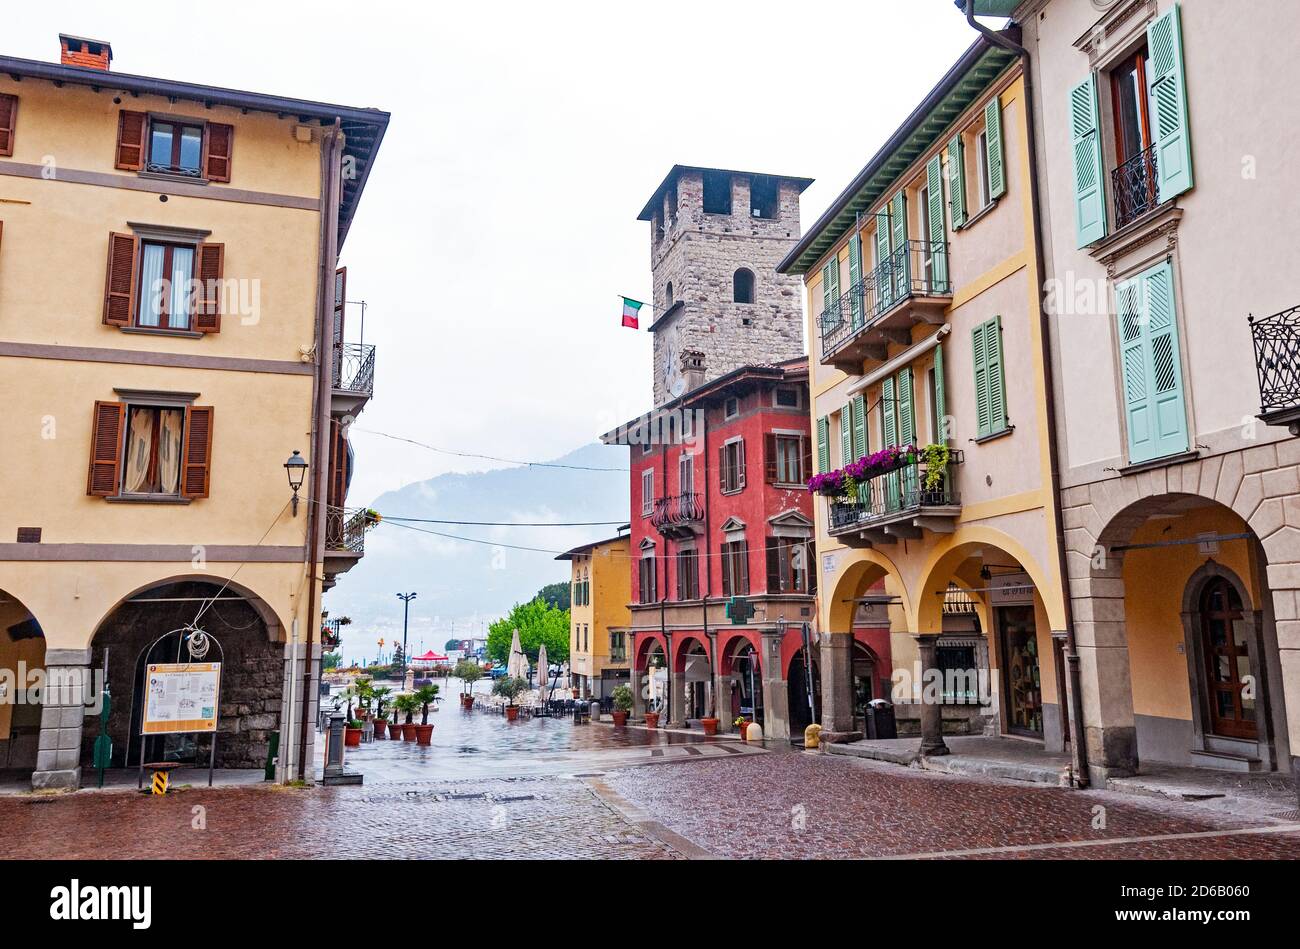 Place de la ville de Pisogne, Lac d'Iseo, Lombardie, Italie Banque D'Images